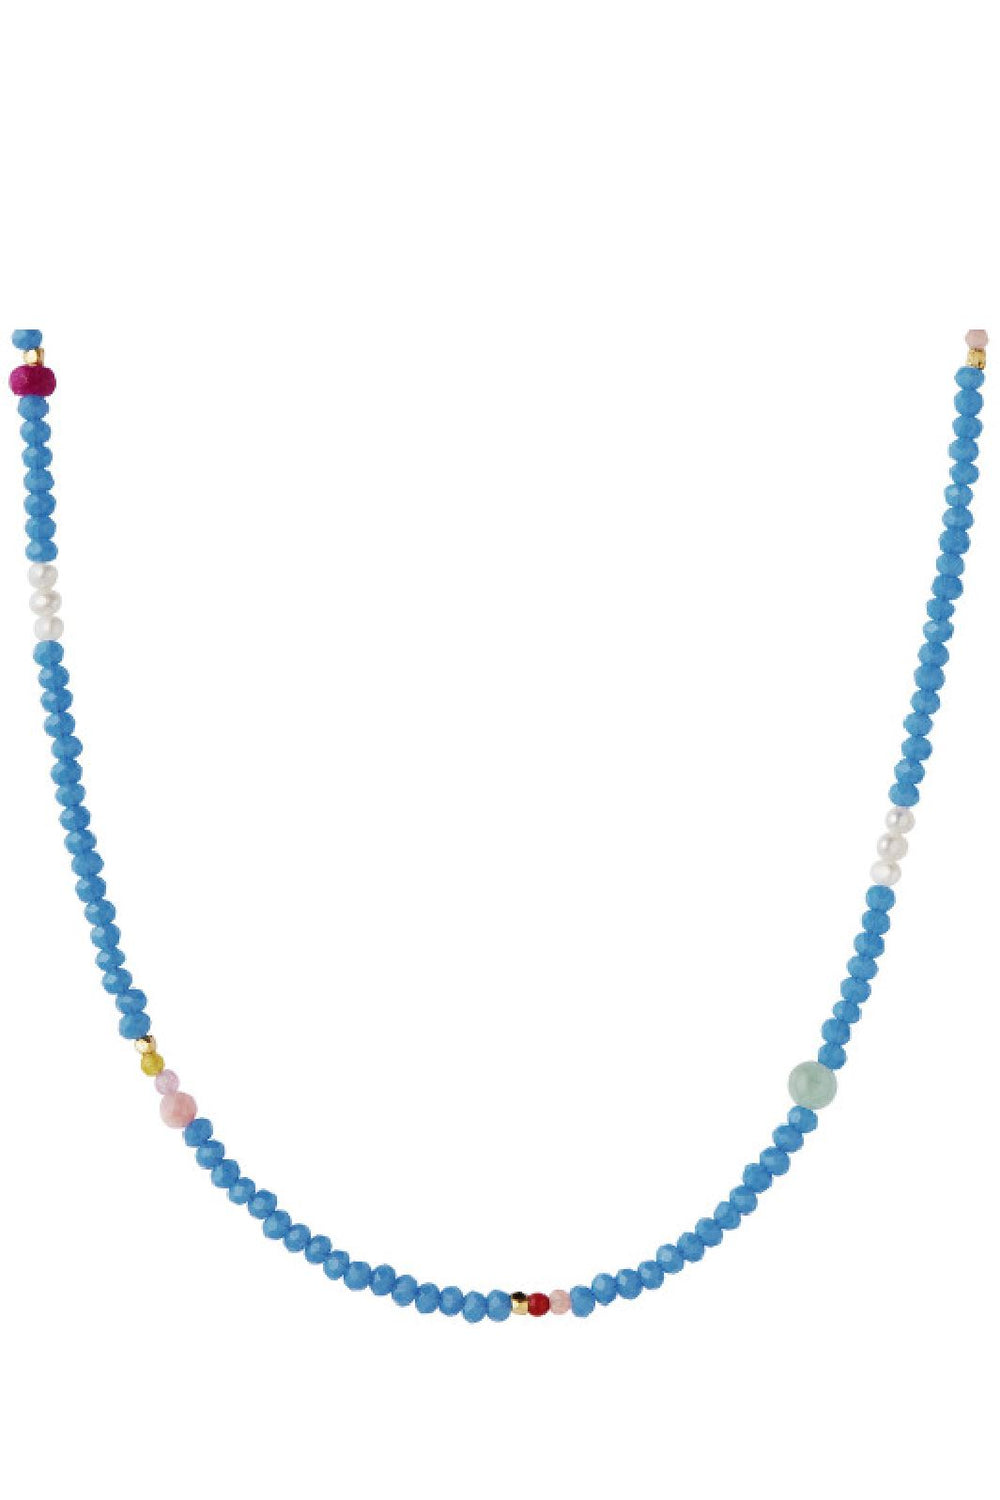 Stine A - Color Crush Necklace - Santorini Mix - 2048-02-Os Smykker 